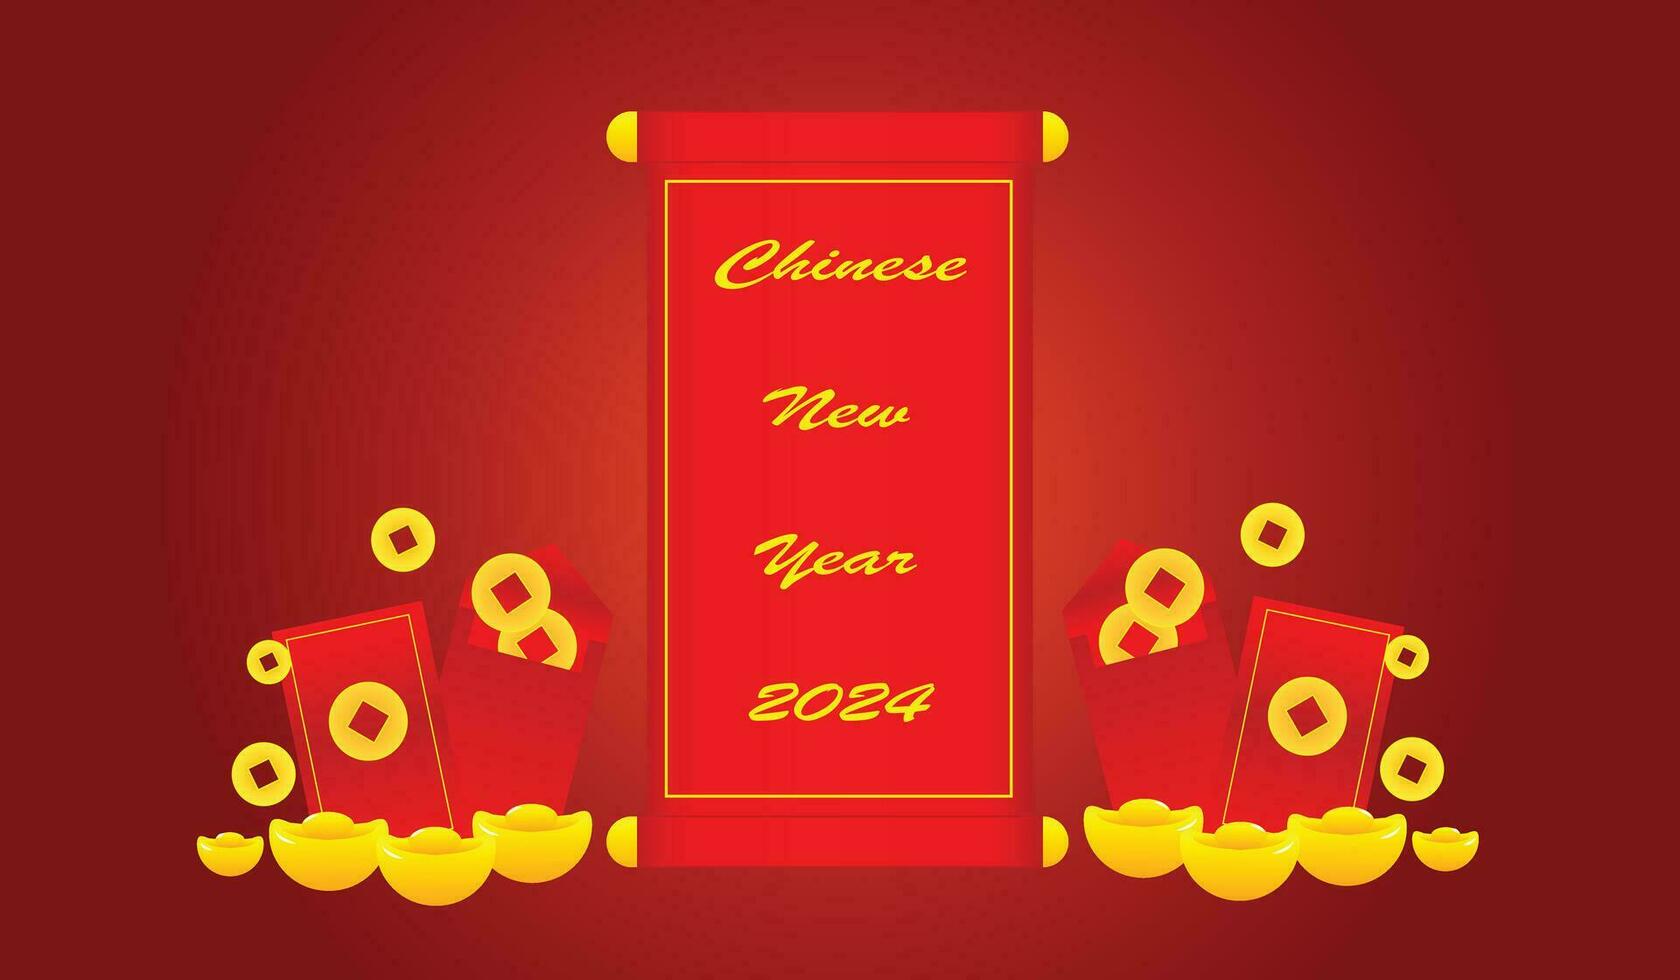 Chinese nieuw jaar gouden munten, rood enveloppen, wensen van mooi zo geluk en rijkdom. vector 3d illustratie